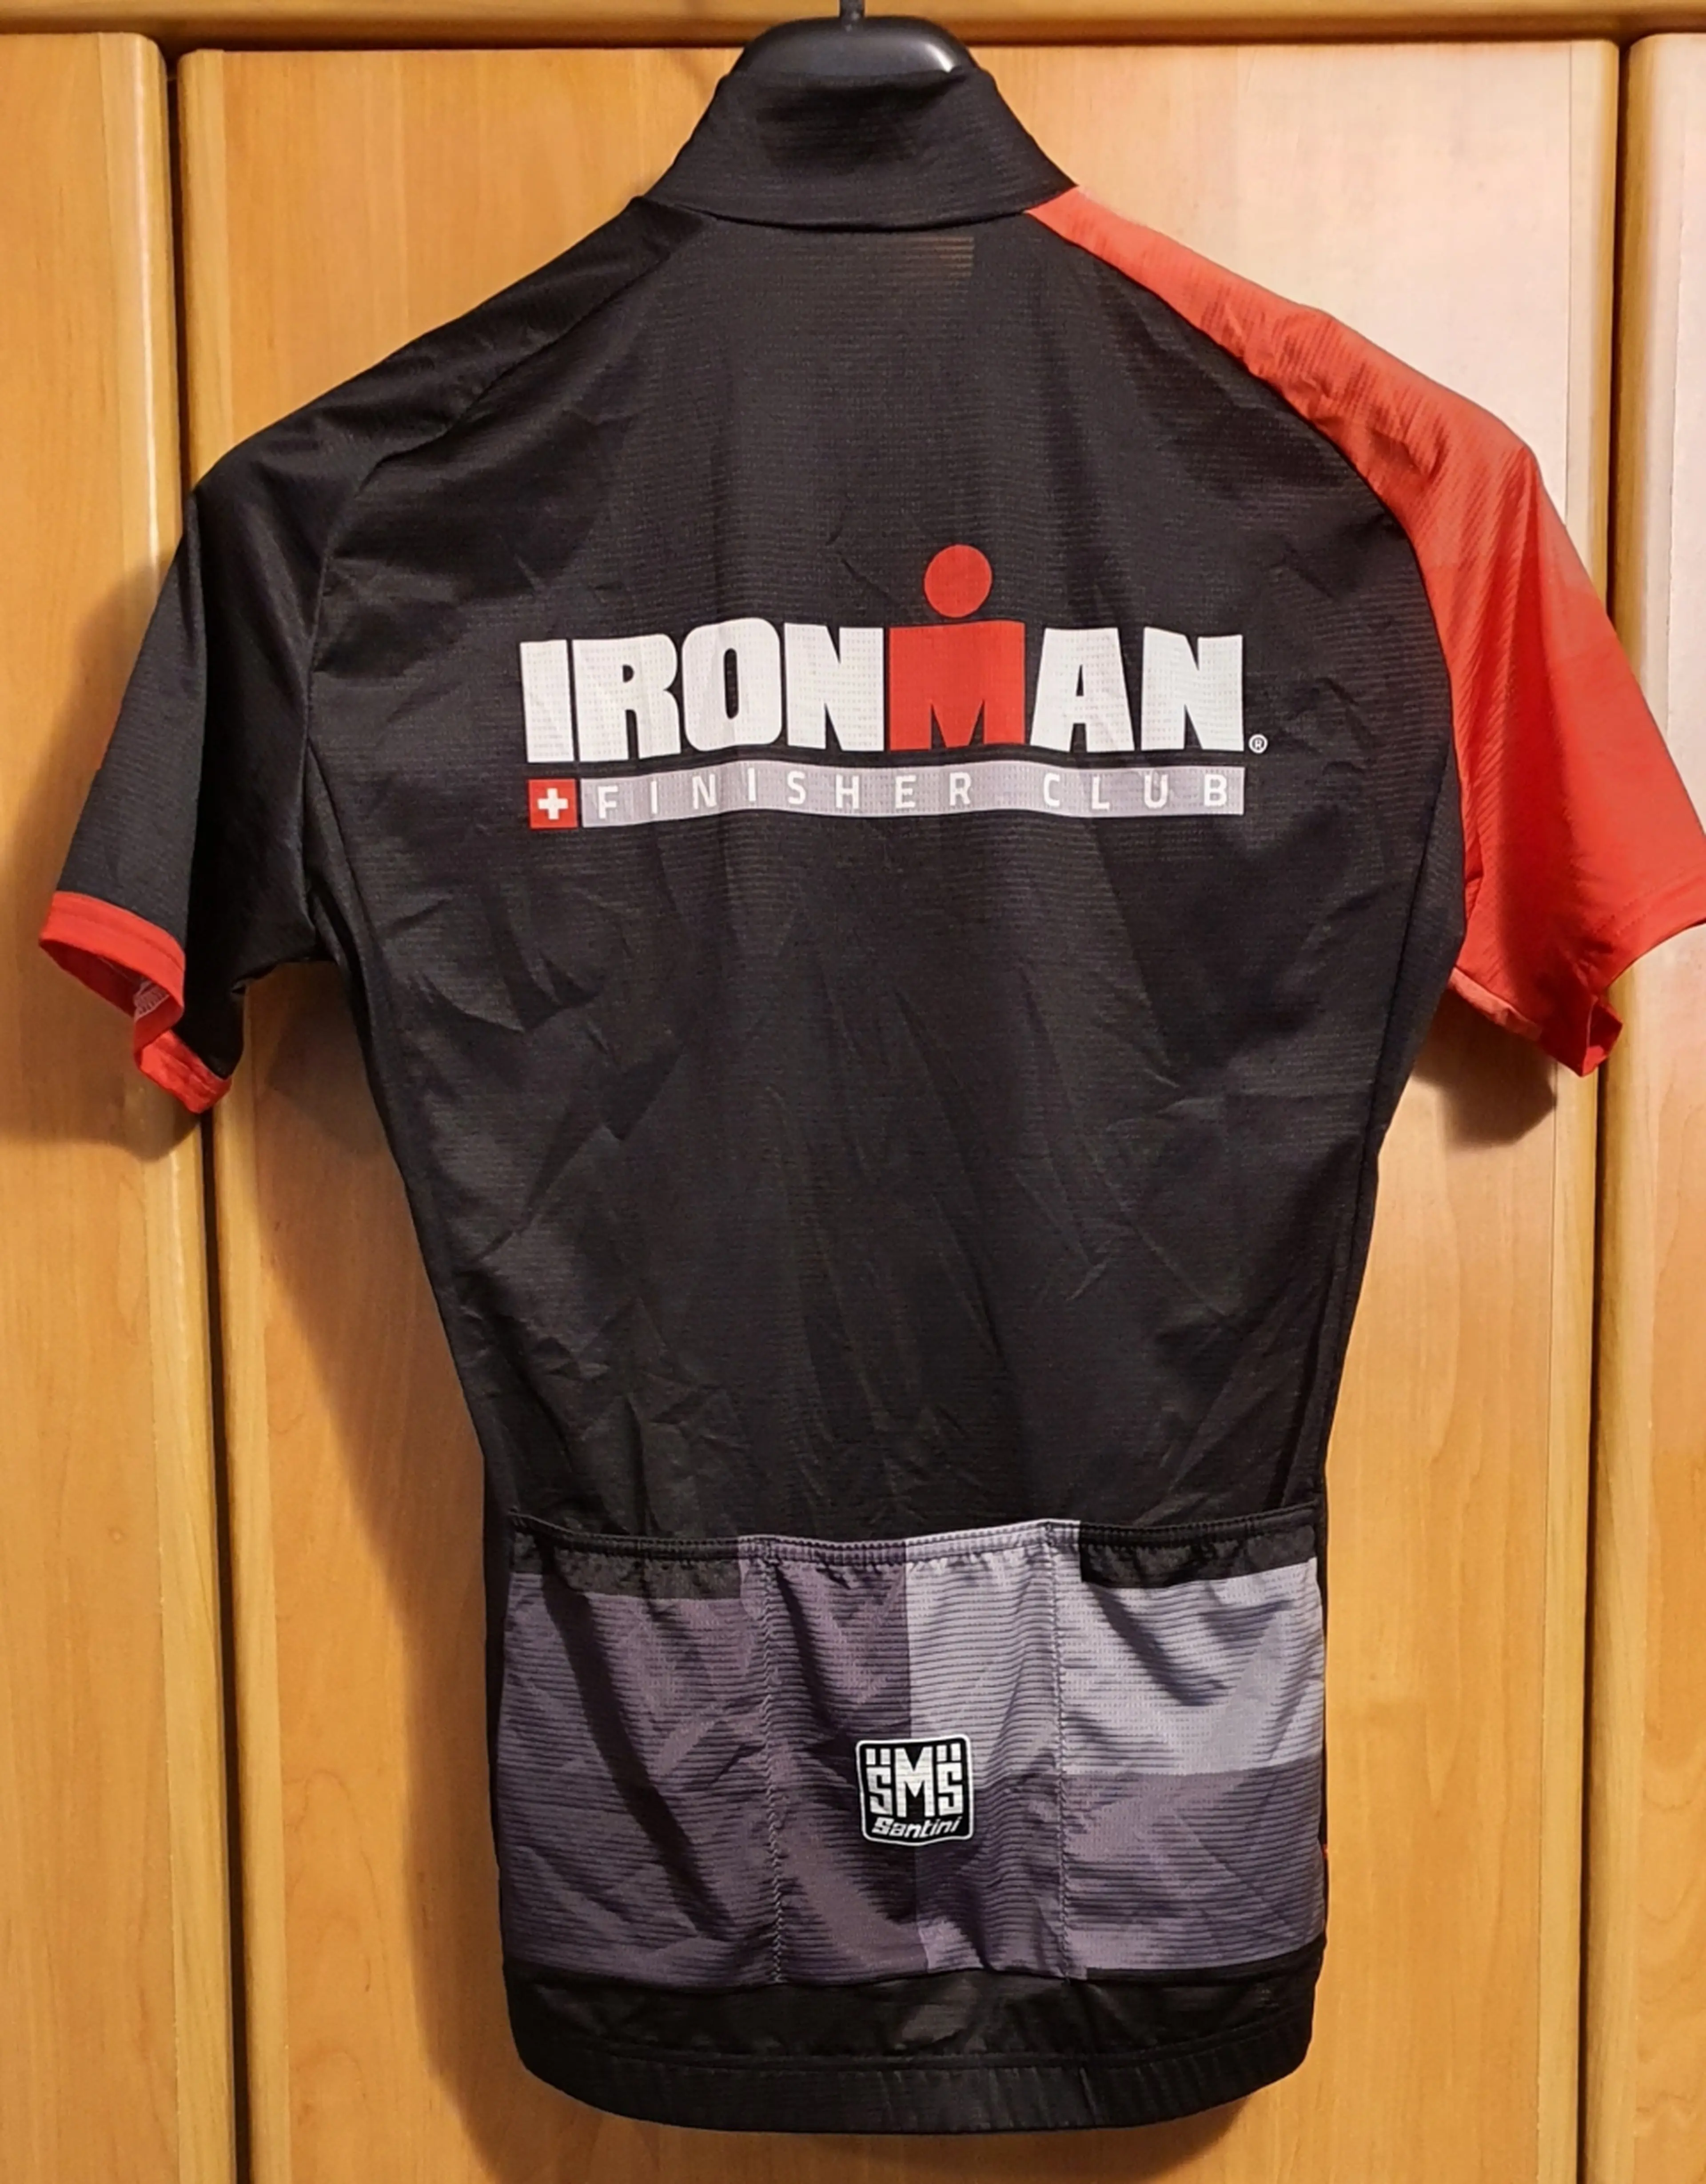 2. Tricou ciclism Santini Ironman masura M